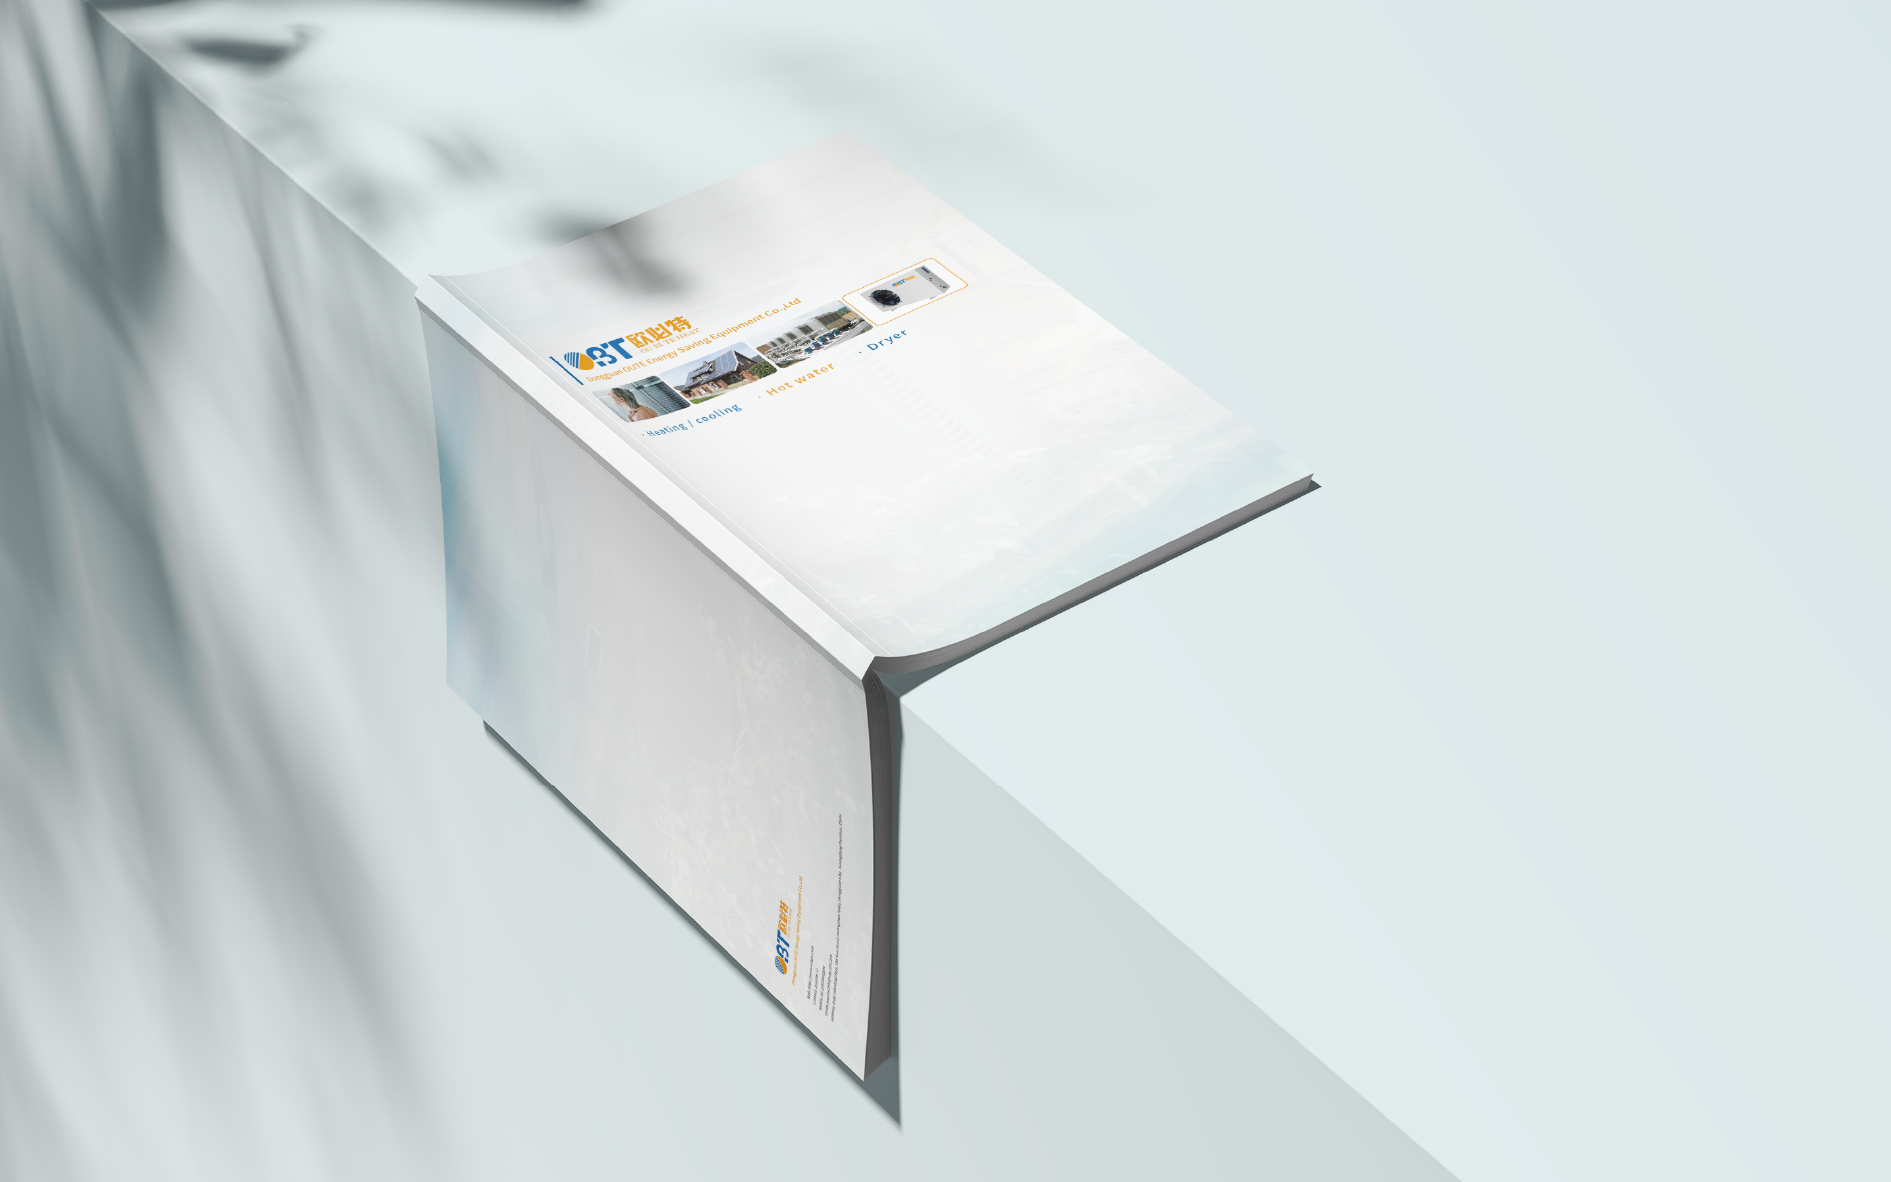 欧必特产品介绍手册设计 飞特网 会员原创画册设计